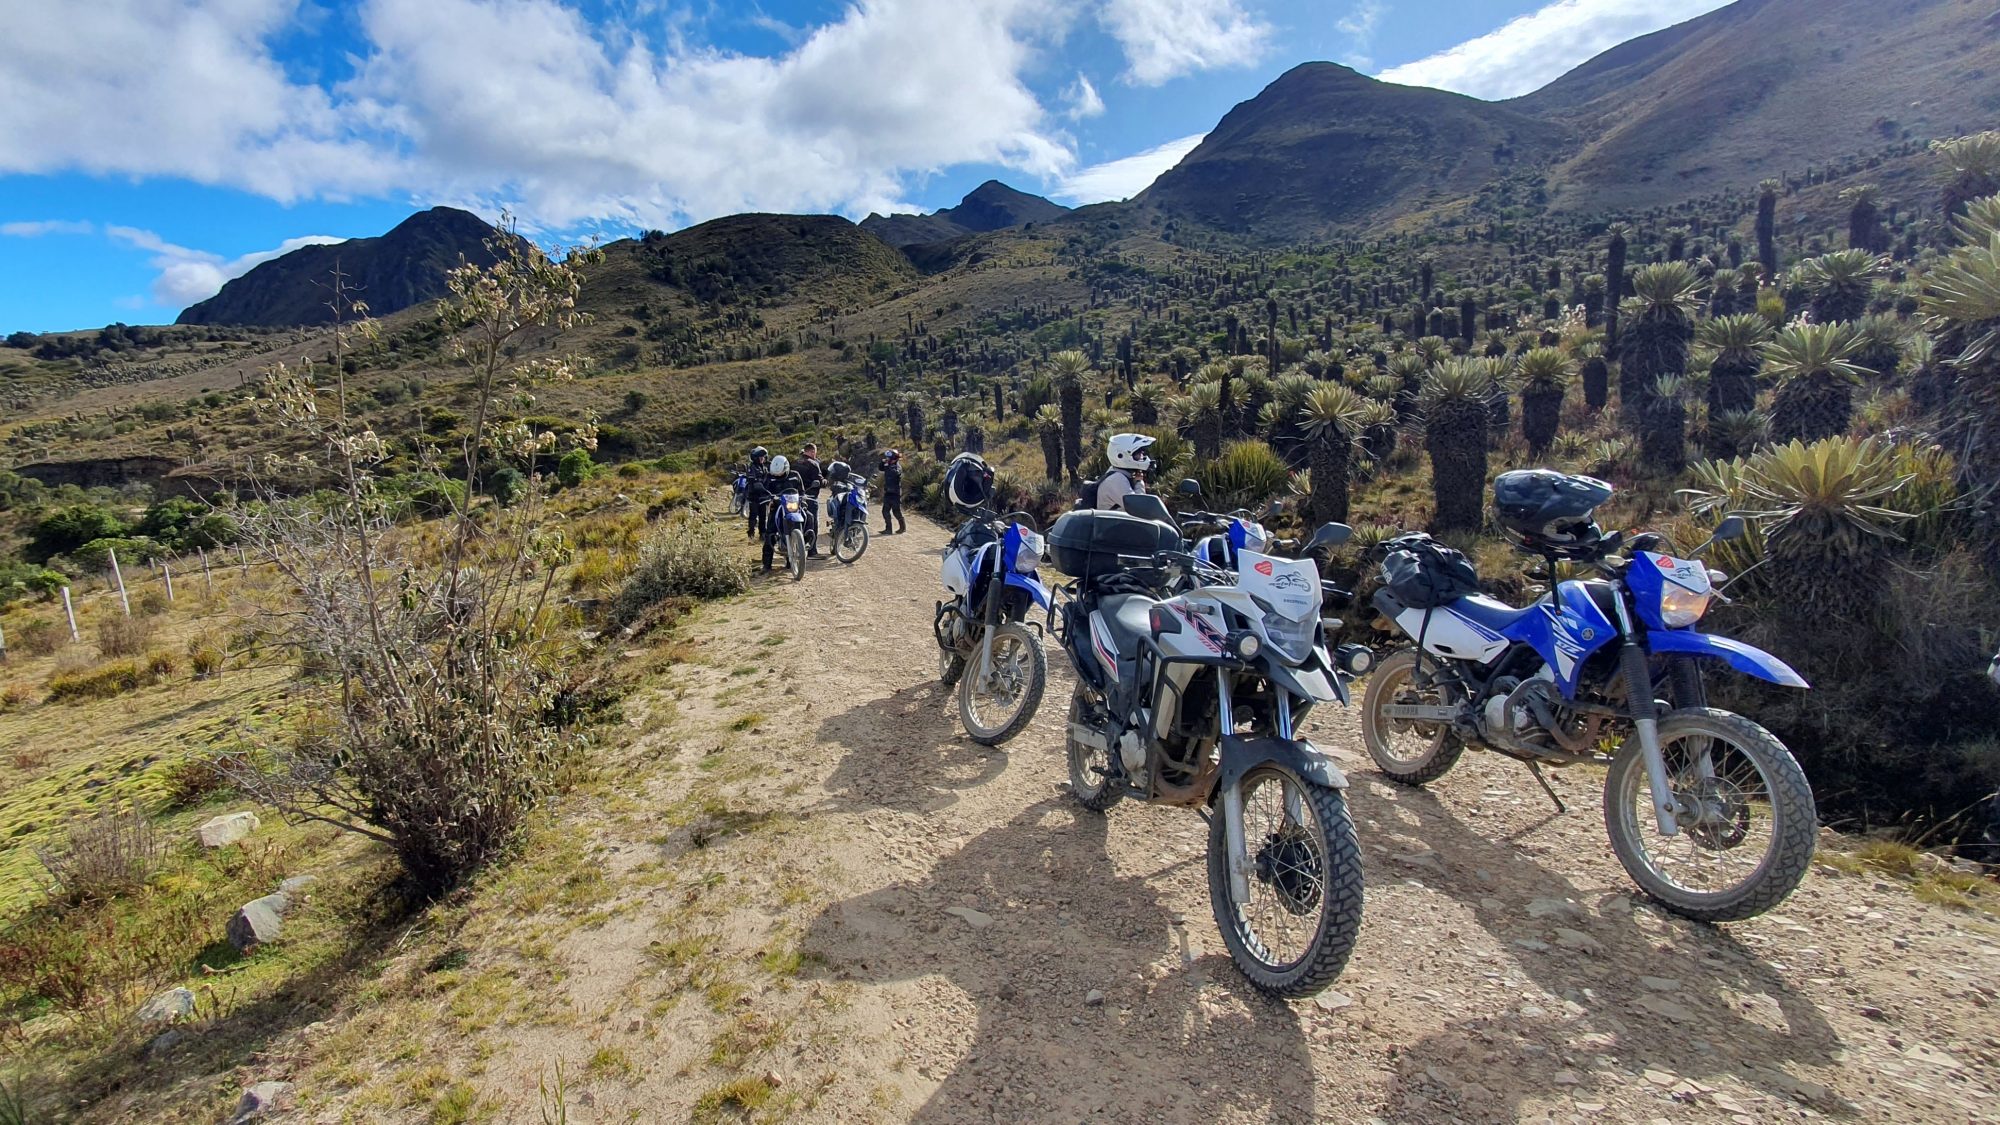 Motocykle na tle espelecji na trasie motocyklowej w Kolumbii